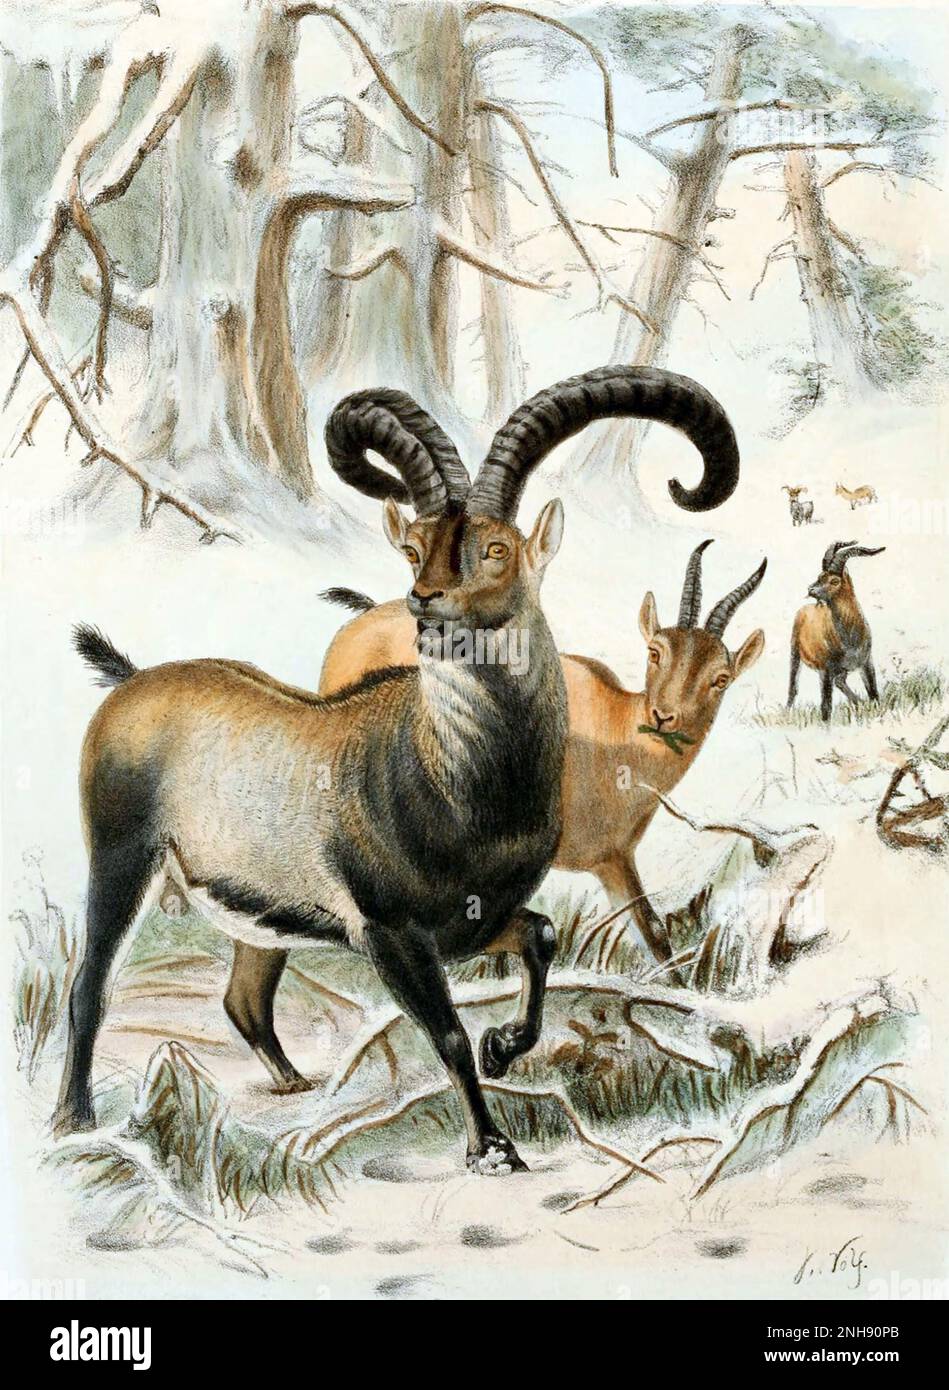 Der Pyrenäen-Ibex (Capra pyrenaica pyrenaica) war eine der vier Unterarten des iberischen Ibex oder der iberischen Wildziege, einer in den Pyrenäen endemischen Art. Diese Spezies war während des Holozän und des oberen Pleistozän häufig. Im Januar 2000 ist das Ibex der Pyrenäen ausgestorben. Ein Versuch im Jahr 2003, die Unterart durch Klonen wiederzubeleben, schlug ebenfalls fehl, nachdem das Tier wenige Minuten nach der Geburt an einem Lungendefekt starb. Illustration von Richard Lydekker, 1898, aus einer Skizze von Joseph Wolf. Stockfoto